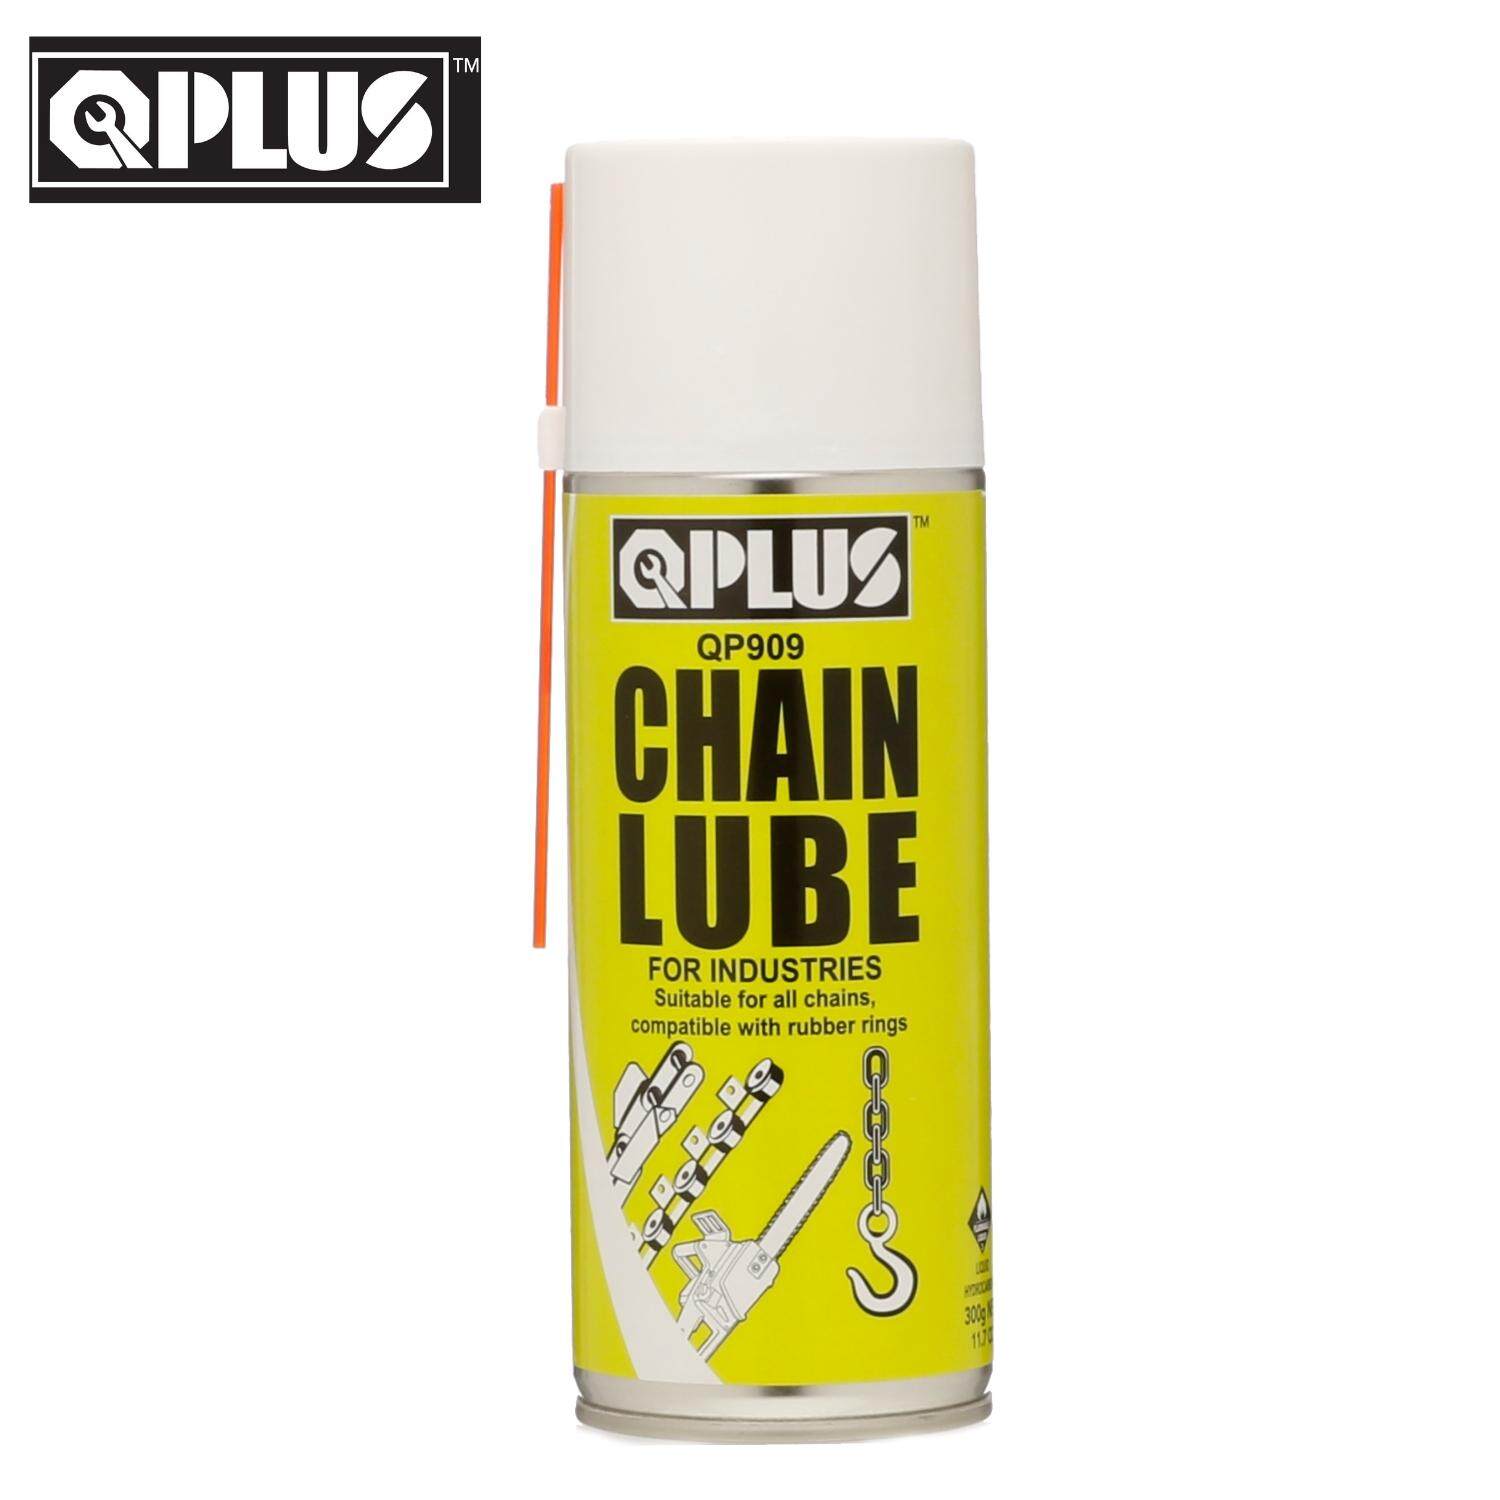 QP909 CHAIN LUBE (300GM) - OIL & LUBRICANT